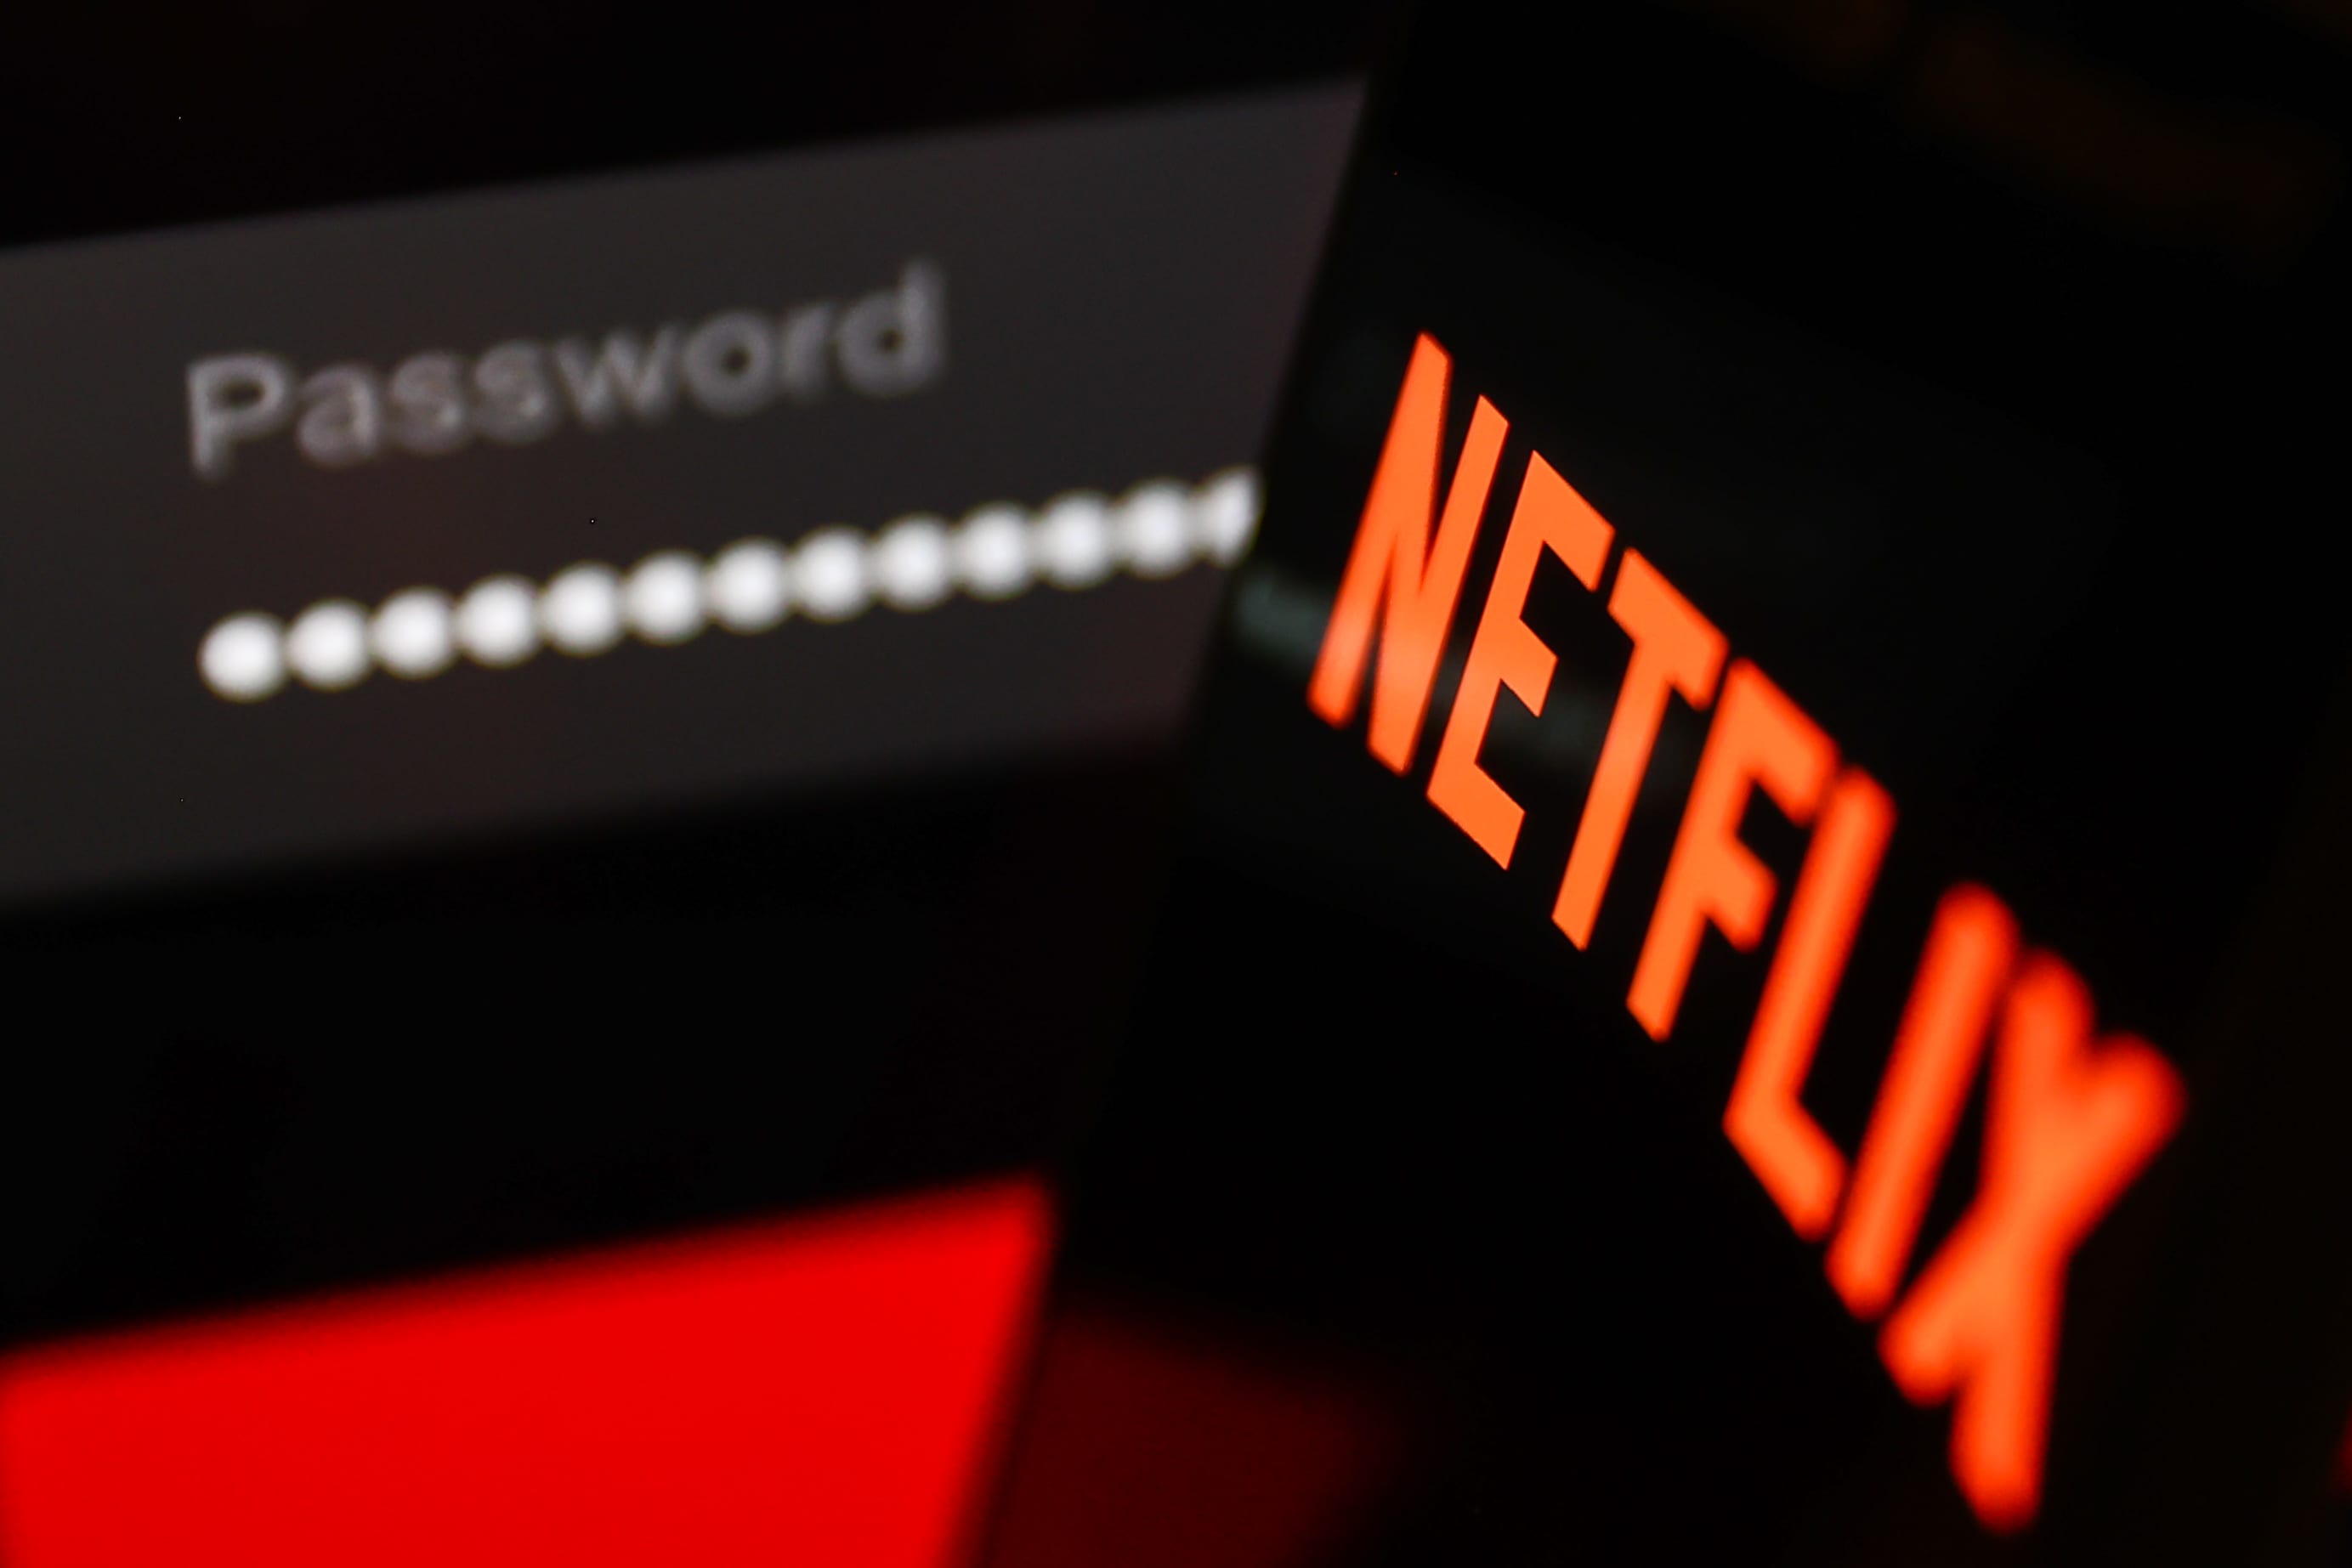 Netflix-Abonnements explodieren im Zuge einer Passwort-Sharing-Kampagne